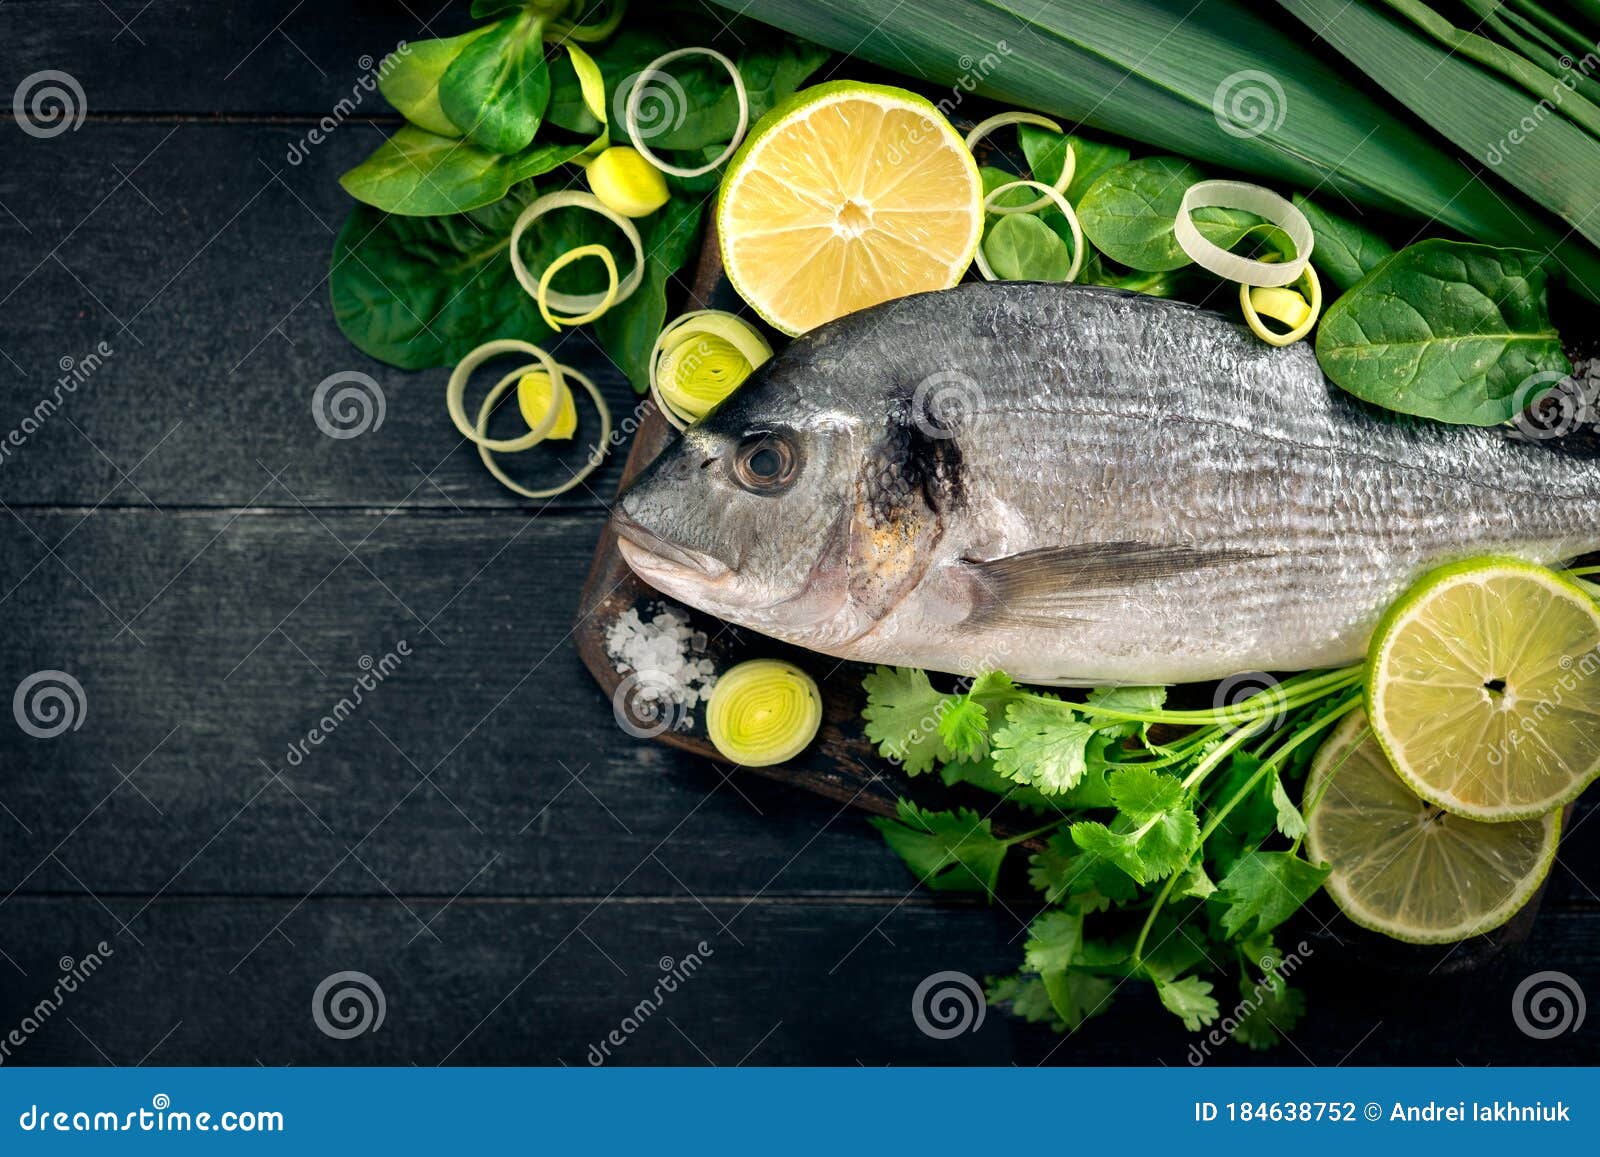 用柠檬辣椒和香草制作的鲜多拉达鱼烘烤 库存图片. 图片 包括有 鲂的, 生气勃勃, 健康, 膳食, 会议室 - 205153239